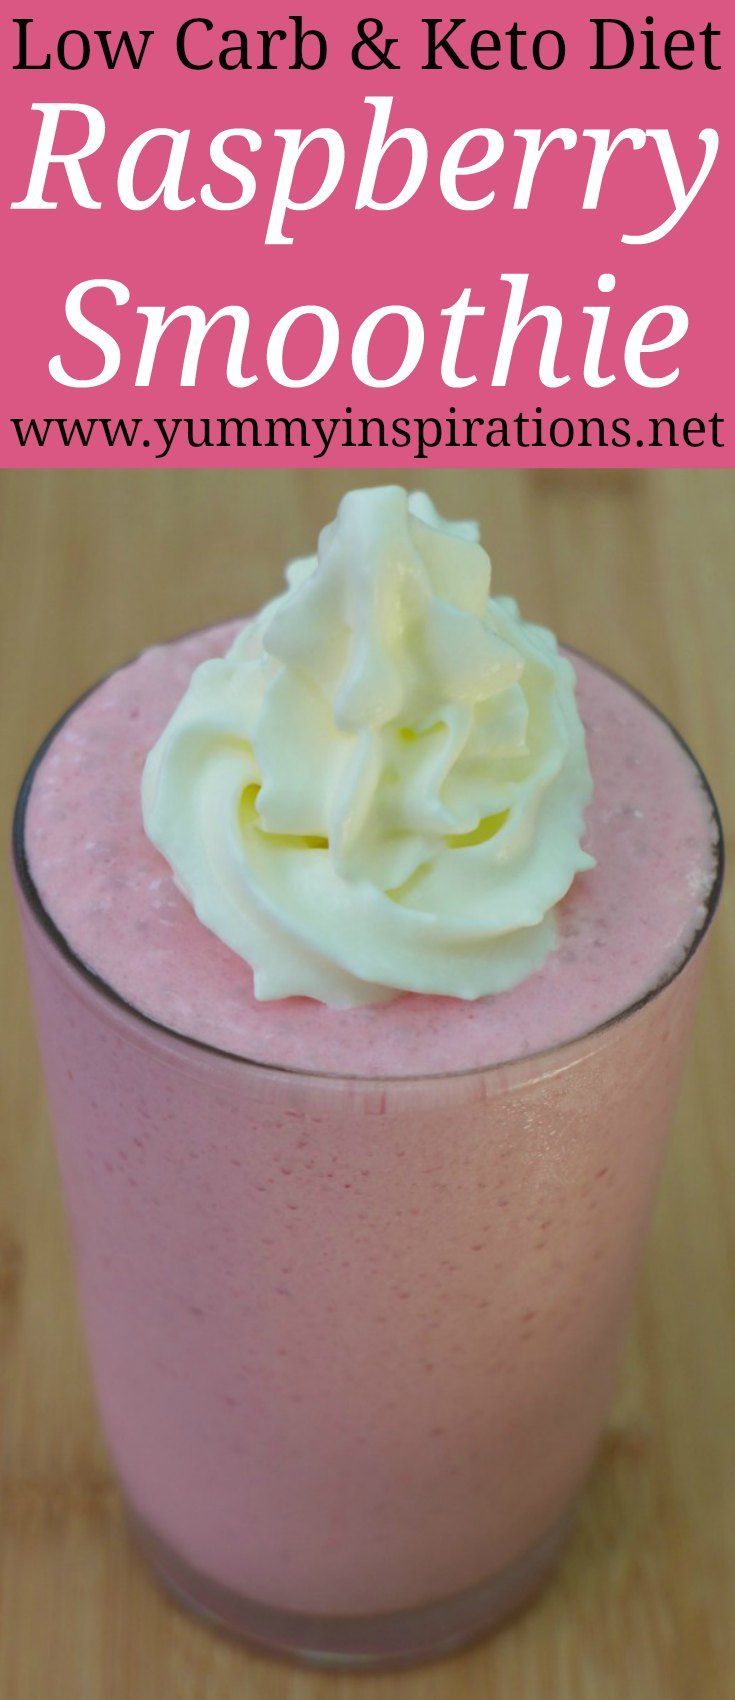 Raspberry and Vanilla Smoothie -   12 diet Smoothie breakfast ideas